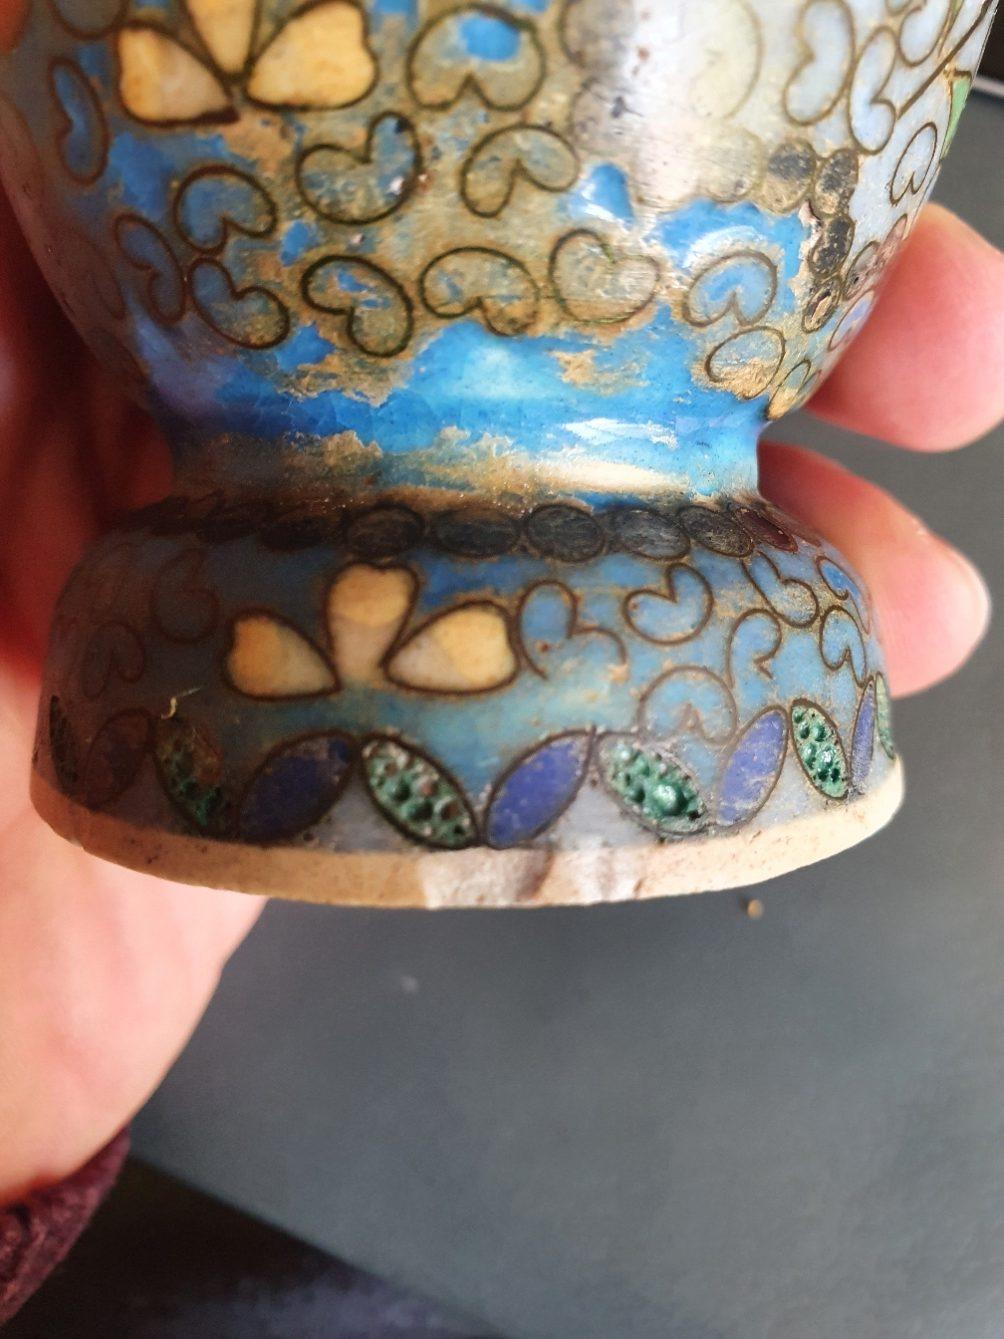 Beschreibung

Ein Paar japanische Totai Shippo Cloisonne (Cloisonné ) Keramikvasen. Die Vasen haben den üblichen cremefarbenen Körper, der normalerweise mit Satsuma-Ware assoziiert wird. Es ist mit einer großen Anzahl von kleinen Messing-Cloisons